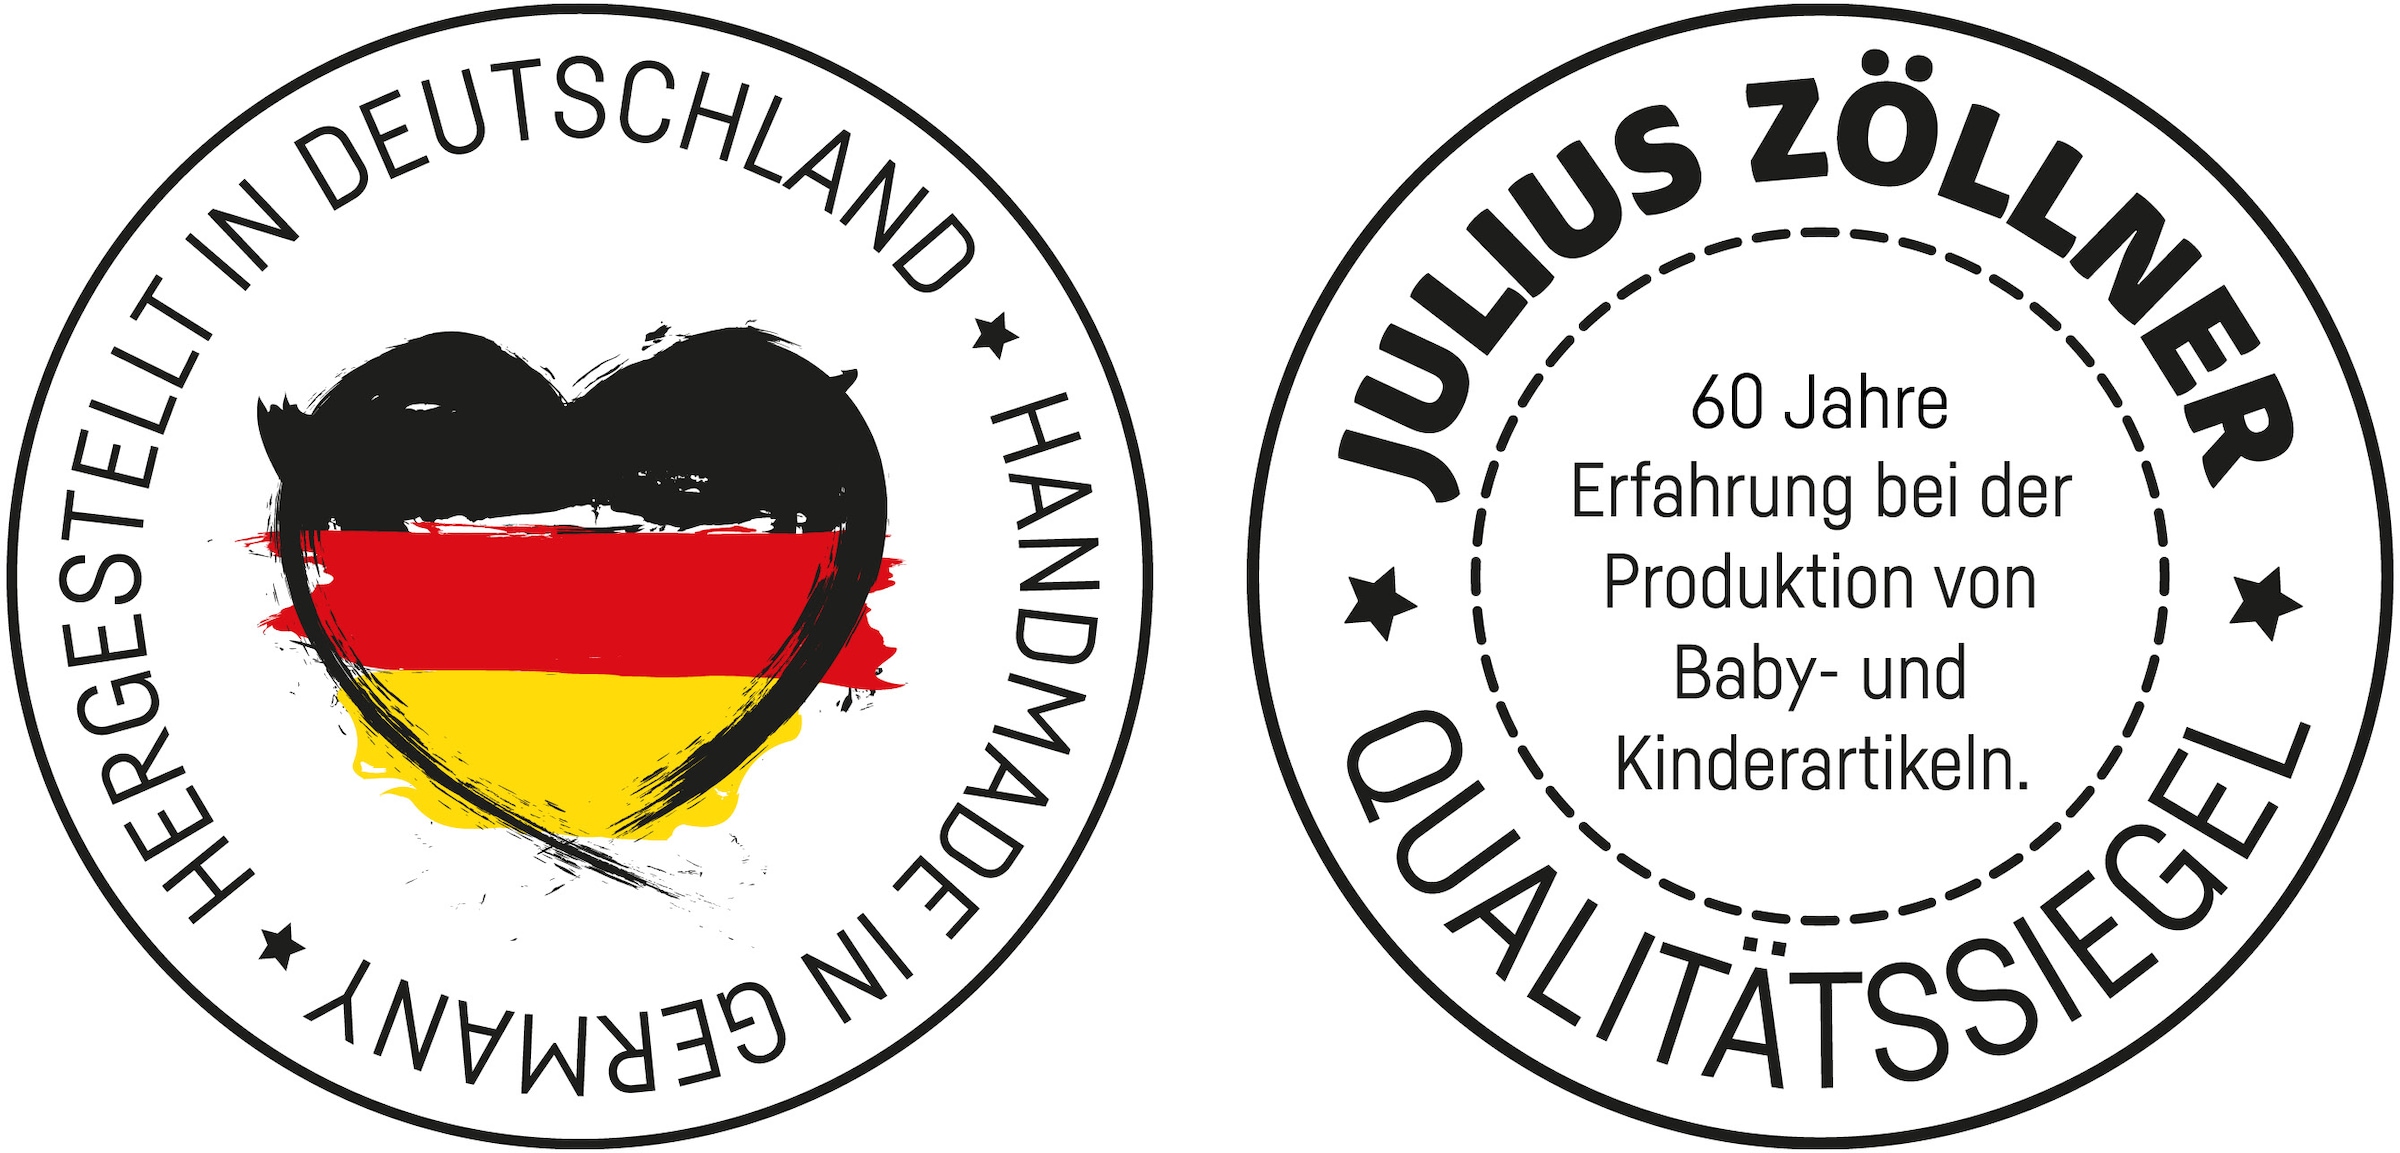 Julius Zöllner Wickelauflage »2-Keil, Schlummerbande«, Made in Germany